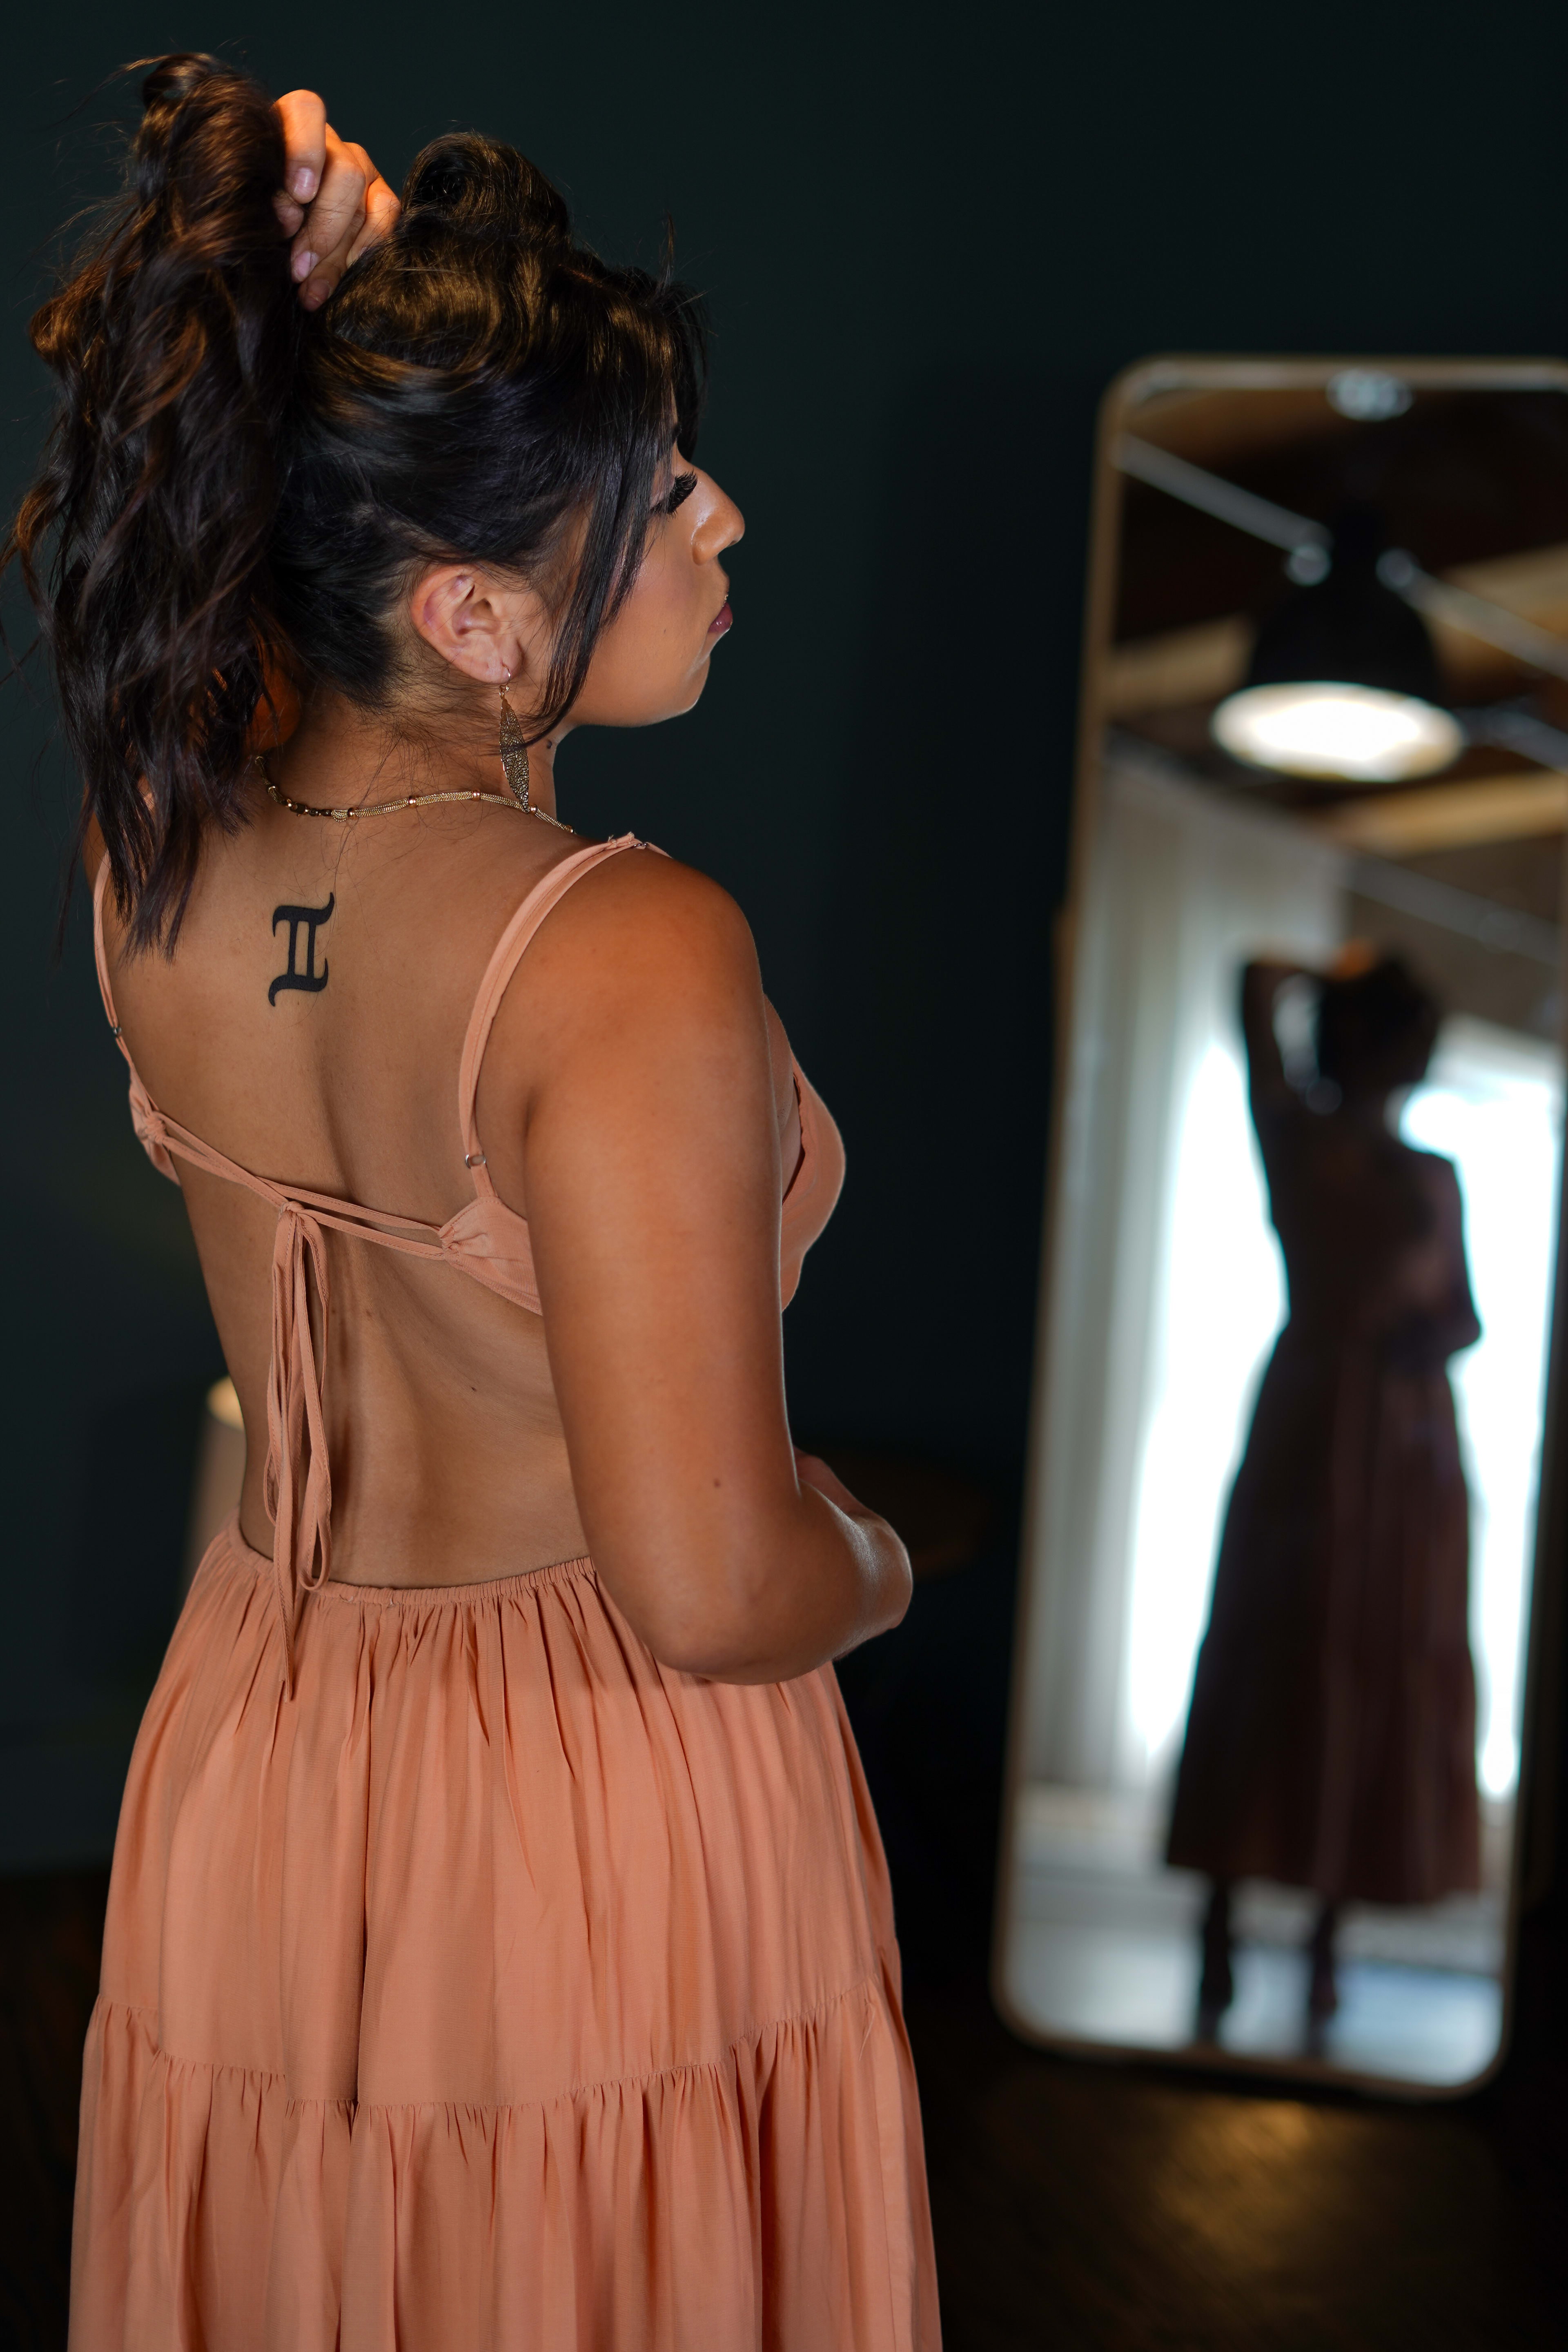 Une femme avec un tatouage dans le dos et dans une robe orange pour un shooting photo de mode.